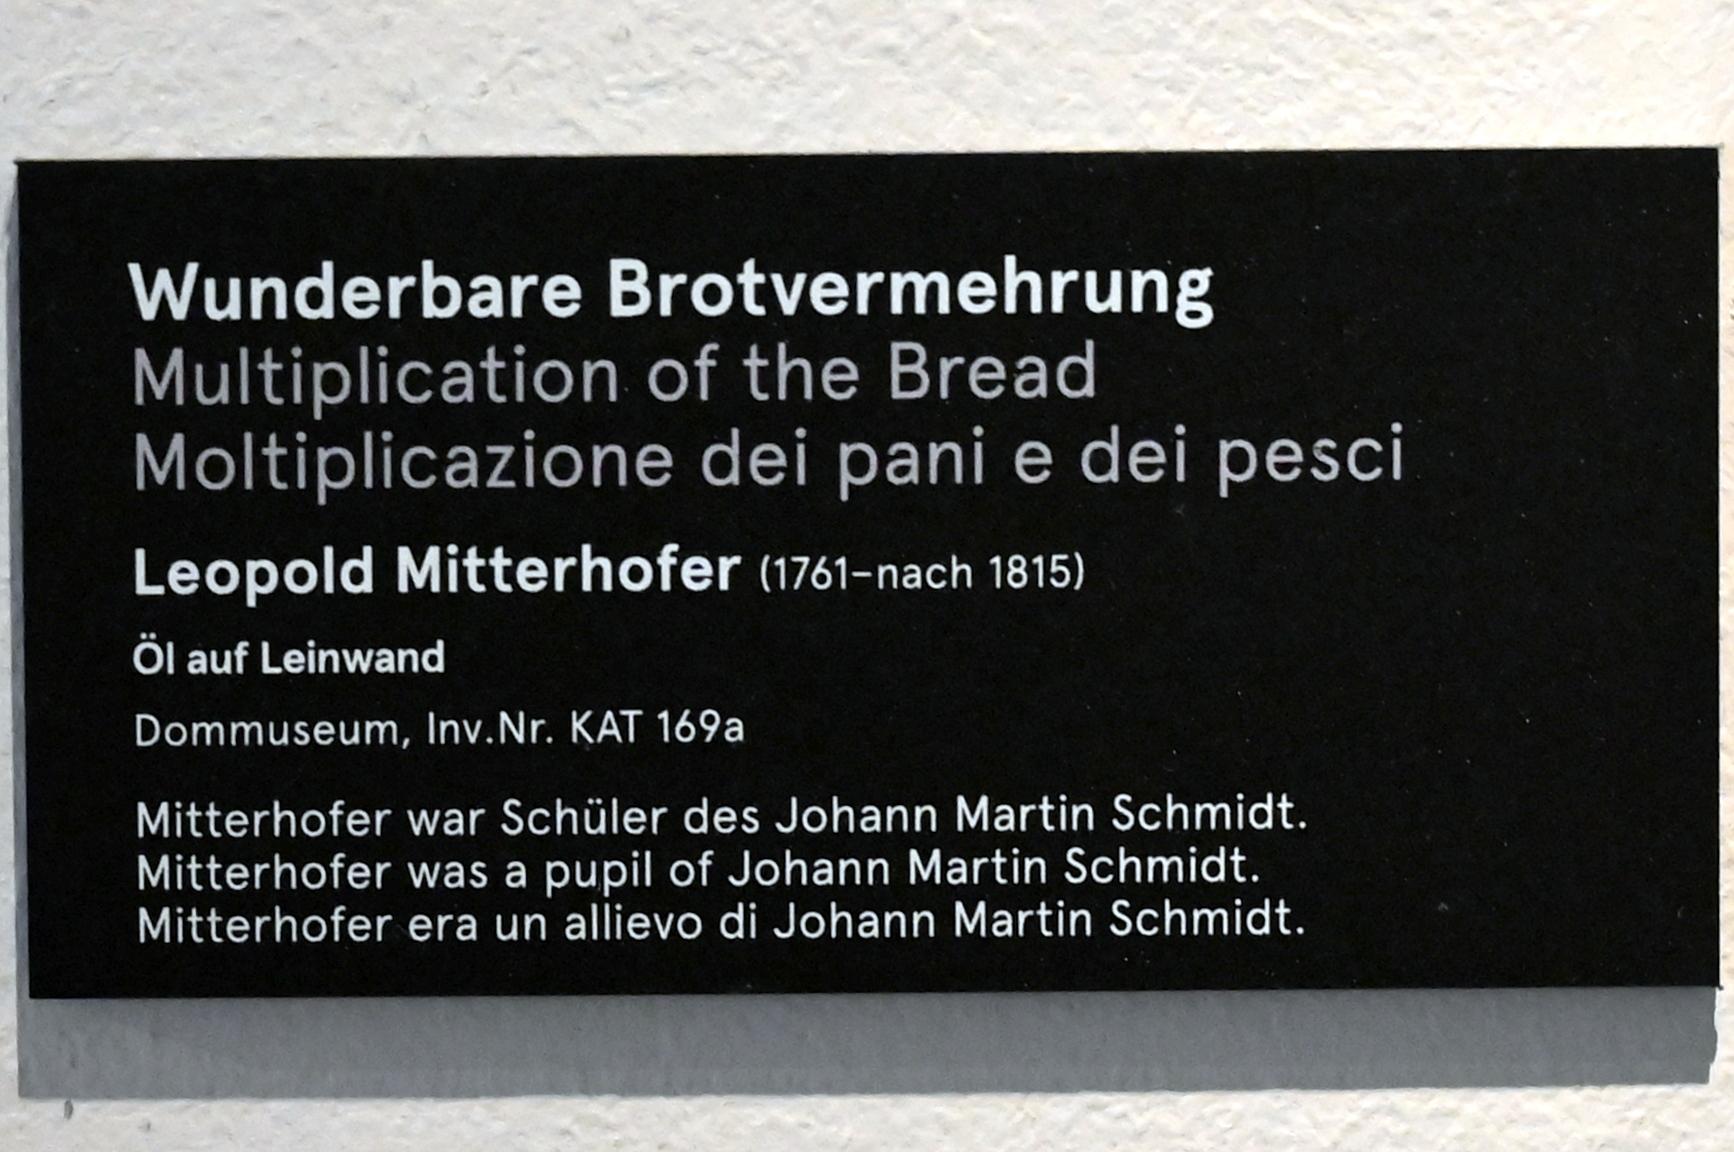 Leopold Mitterhofer (1782), Wunderbare Brotvermehrung, Salzburg, Dommuseum Salzburg, Undatiert, Bild 2/3